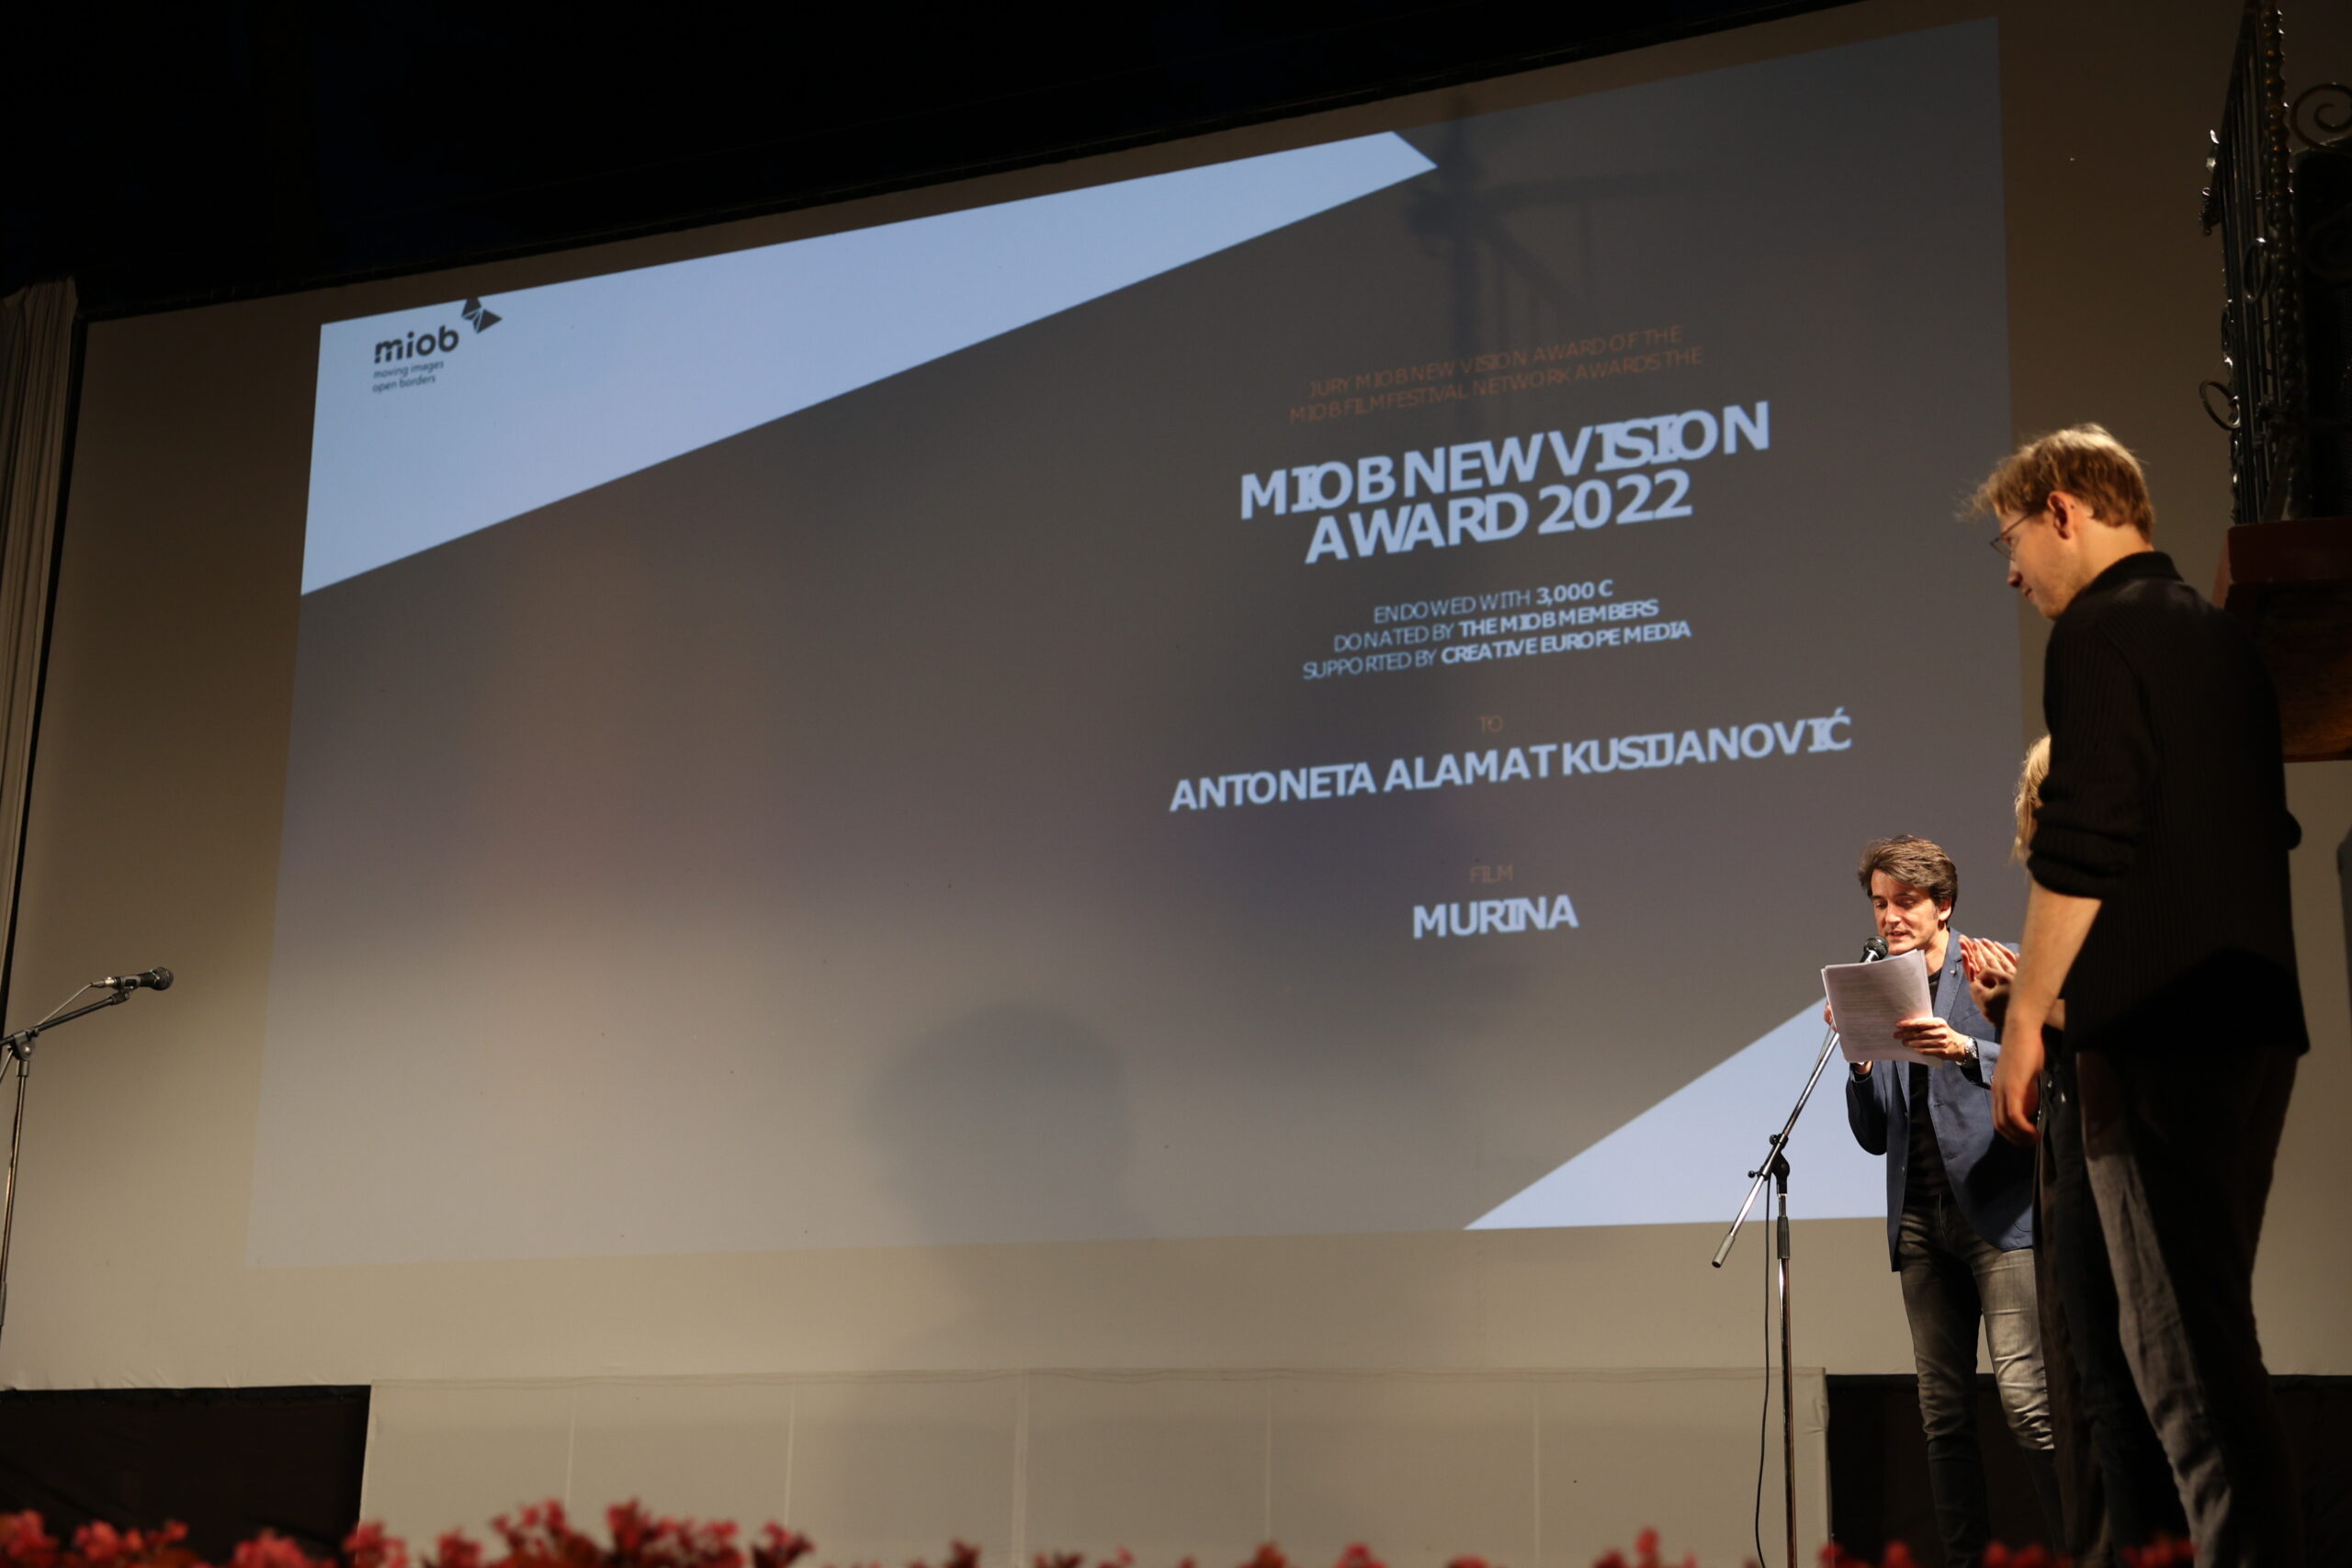 MIOB nagrada dodeljena filmu “Murina” rediteljke Antonete Alamat Kusijanović